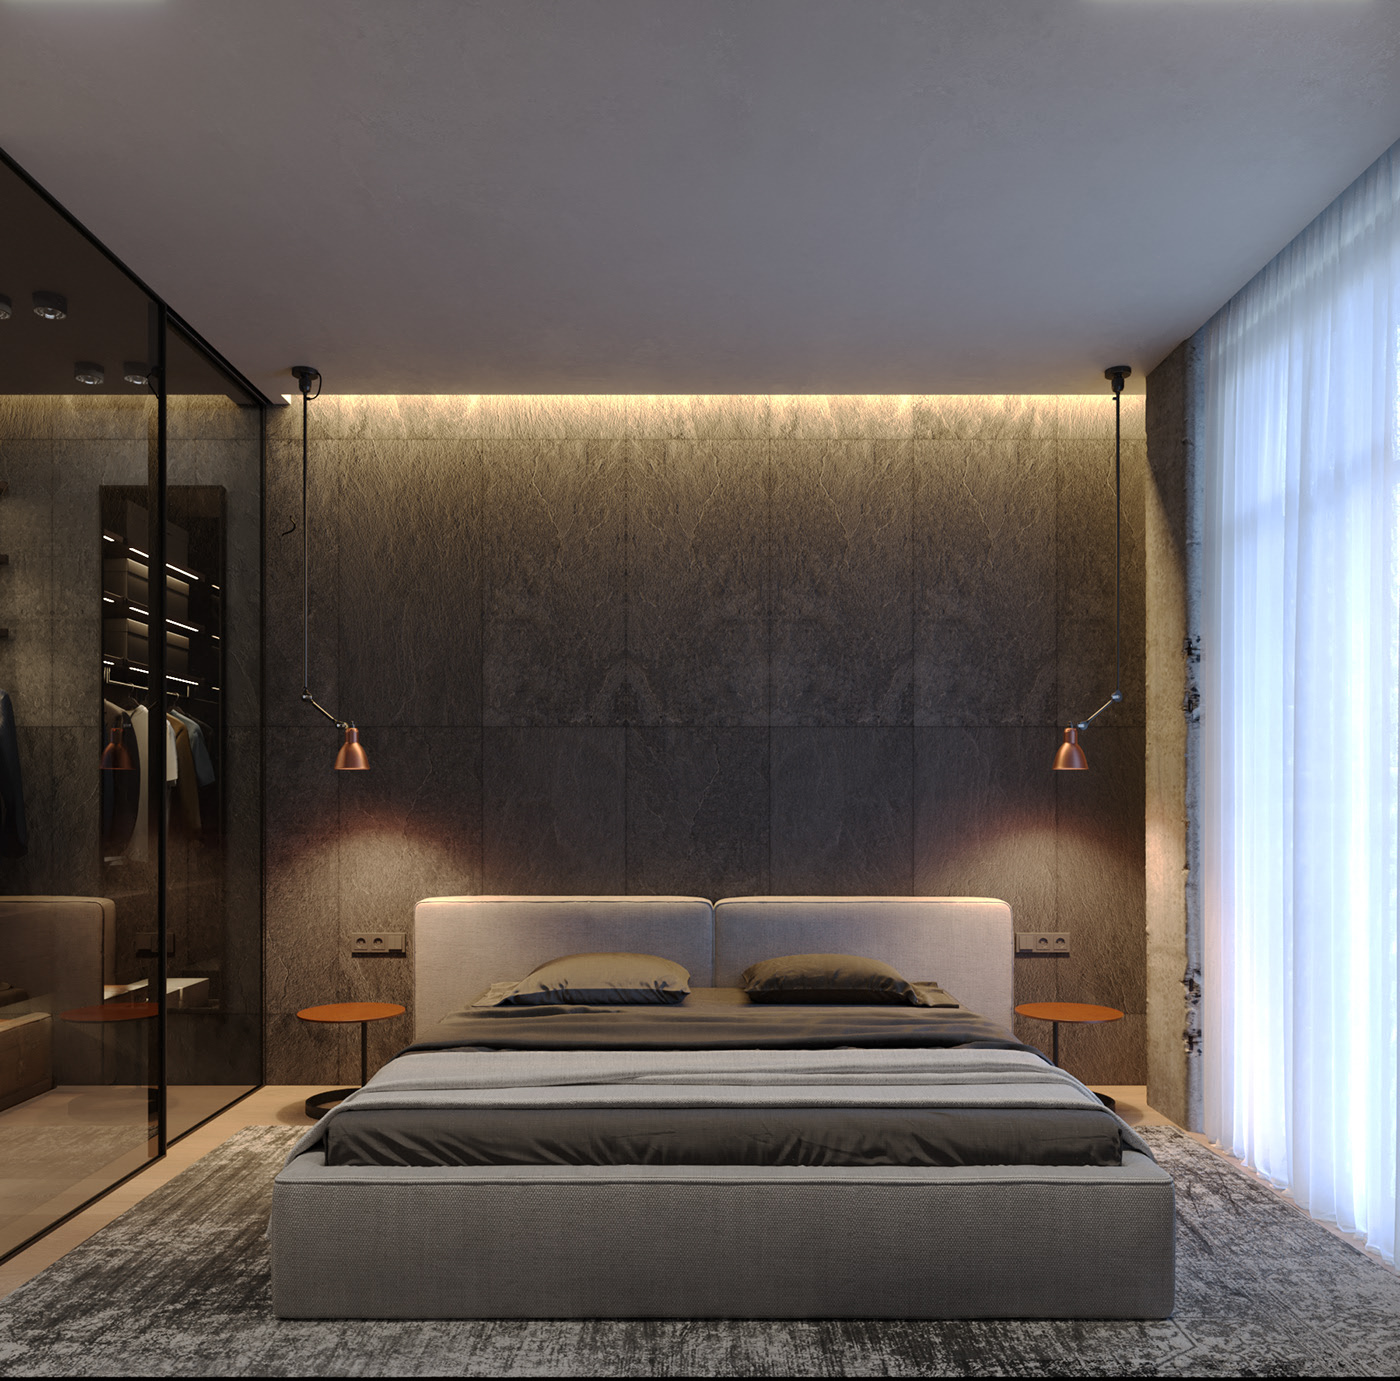 Phòng ngủ master được thiết kế đơn giản và hiện đại với ô cửa sổ lớn giúp lấy sáng tối đa